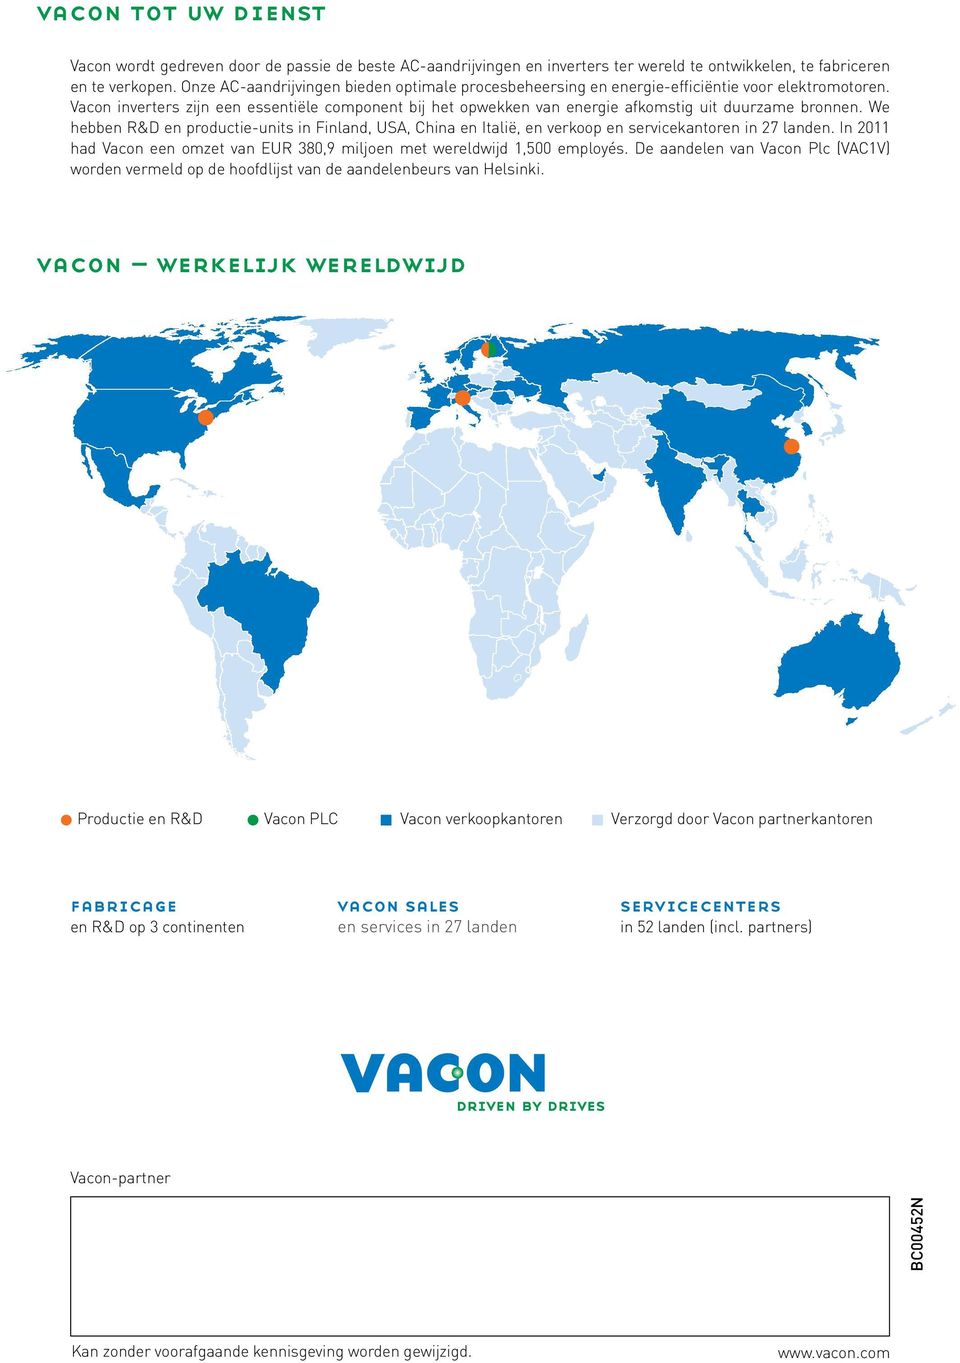 Vacon inverters zijn een essentiële component bij het opwekken van energie afkomstig uit duurzame bronnen.